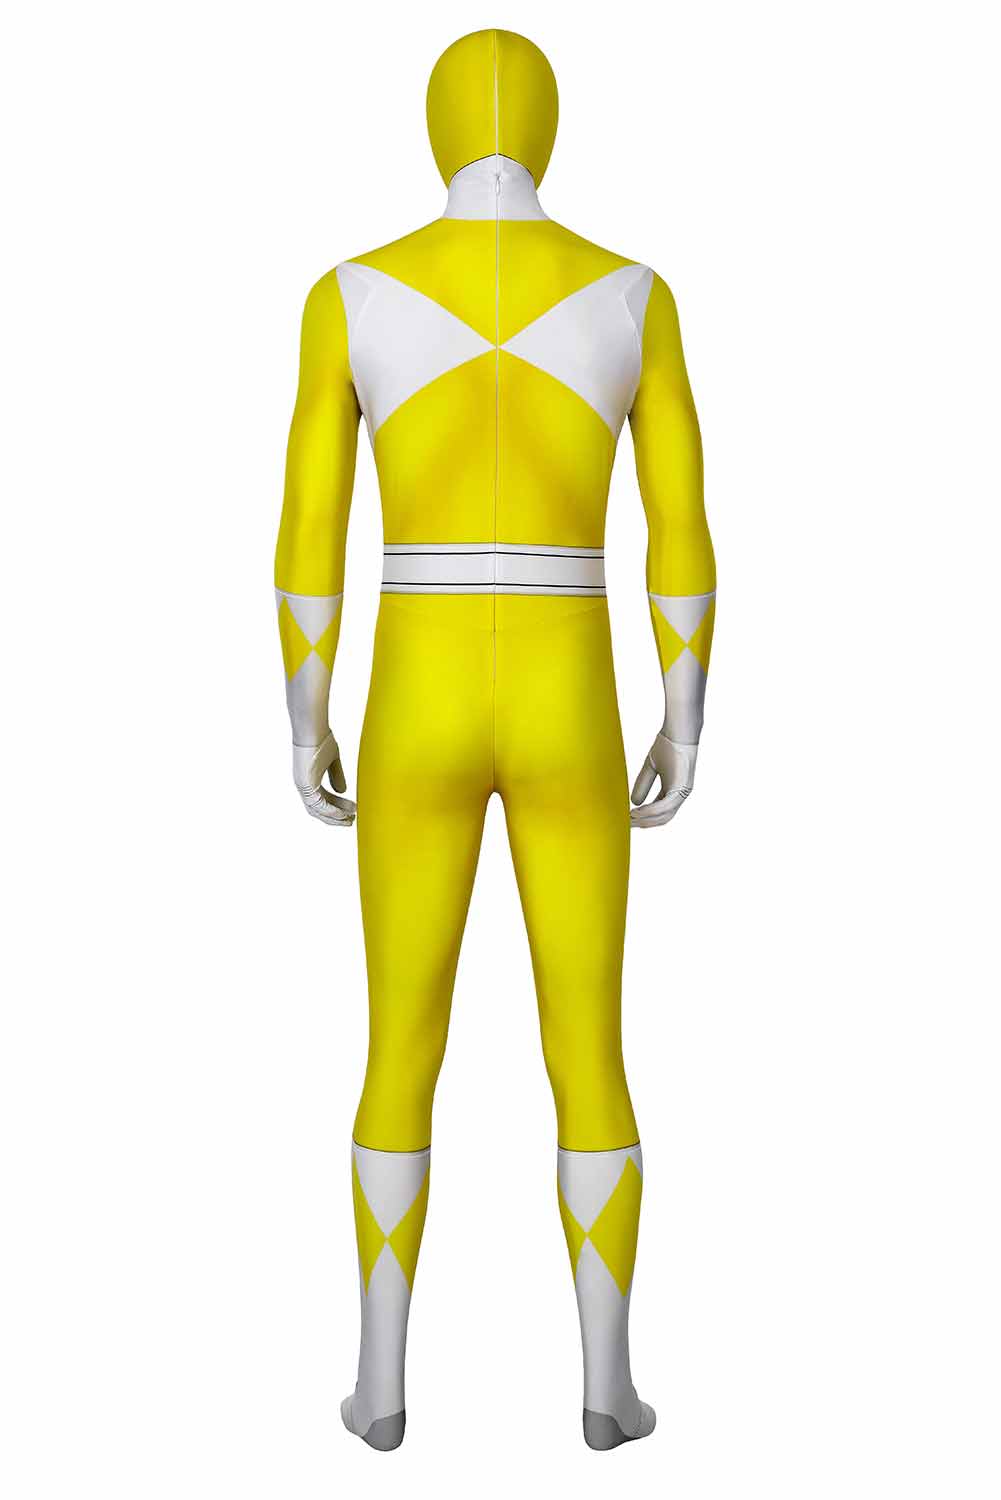 Power Rangers : Mighty Morphin Ranger Jaune Cosplay Costume